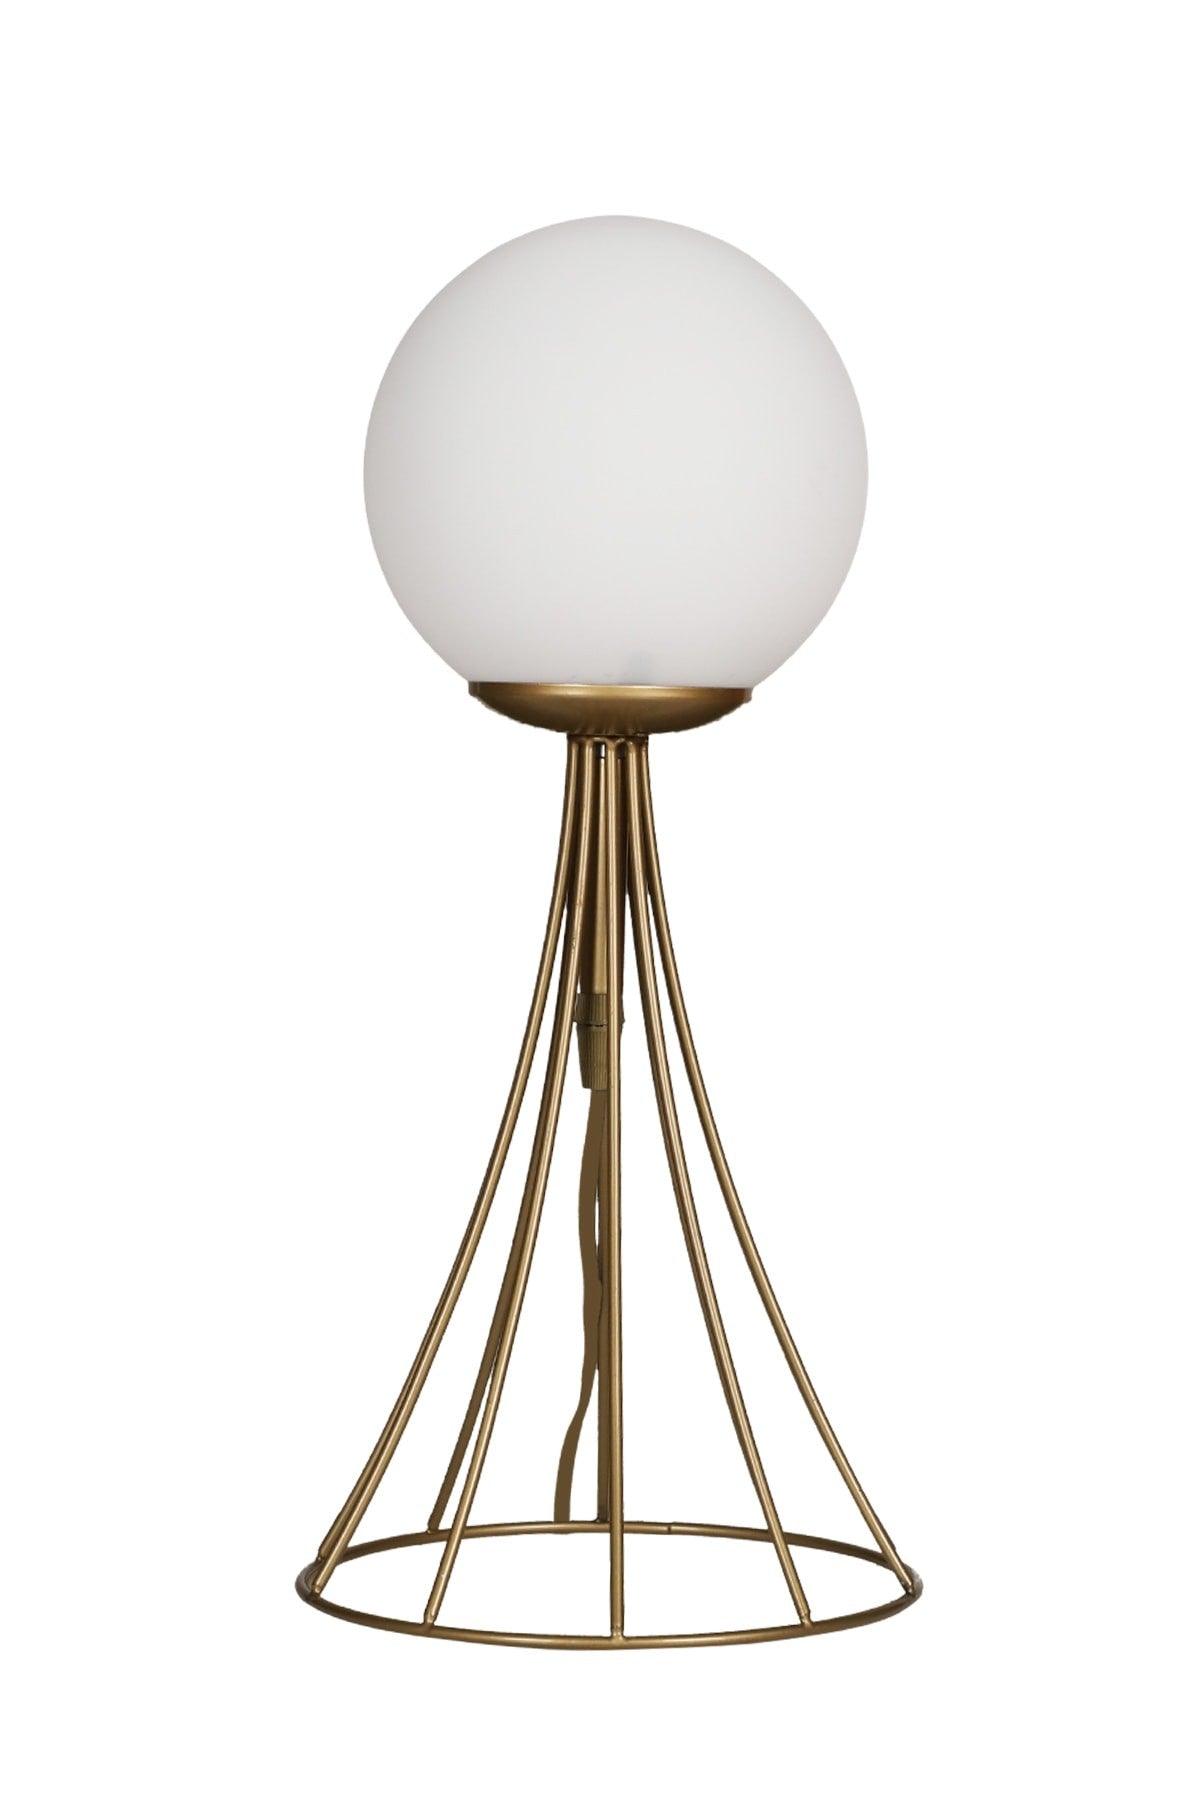 Lapis Table Lamp Tumbled White Globe Glass - Swordslife